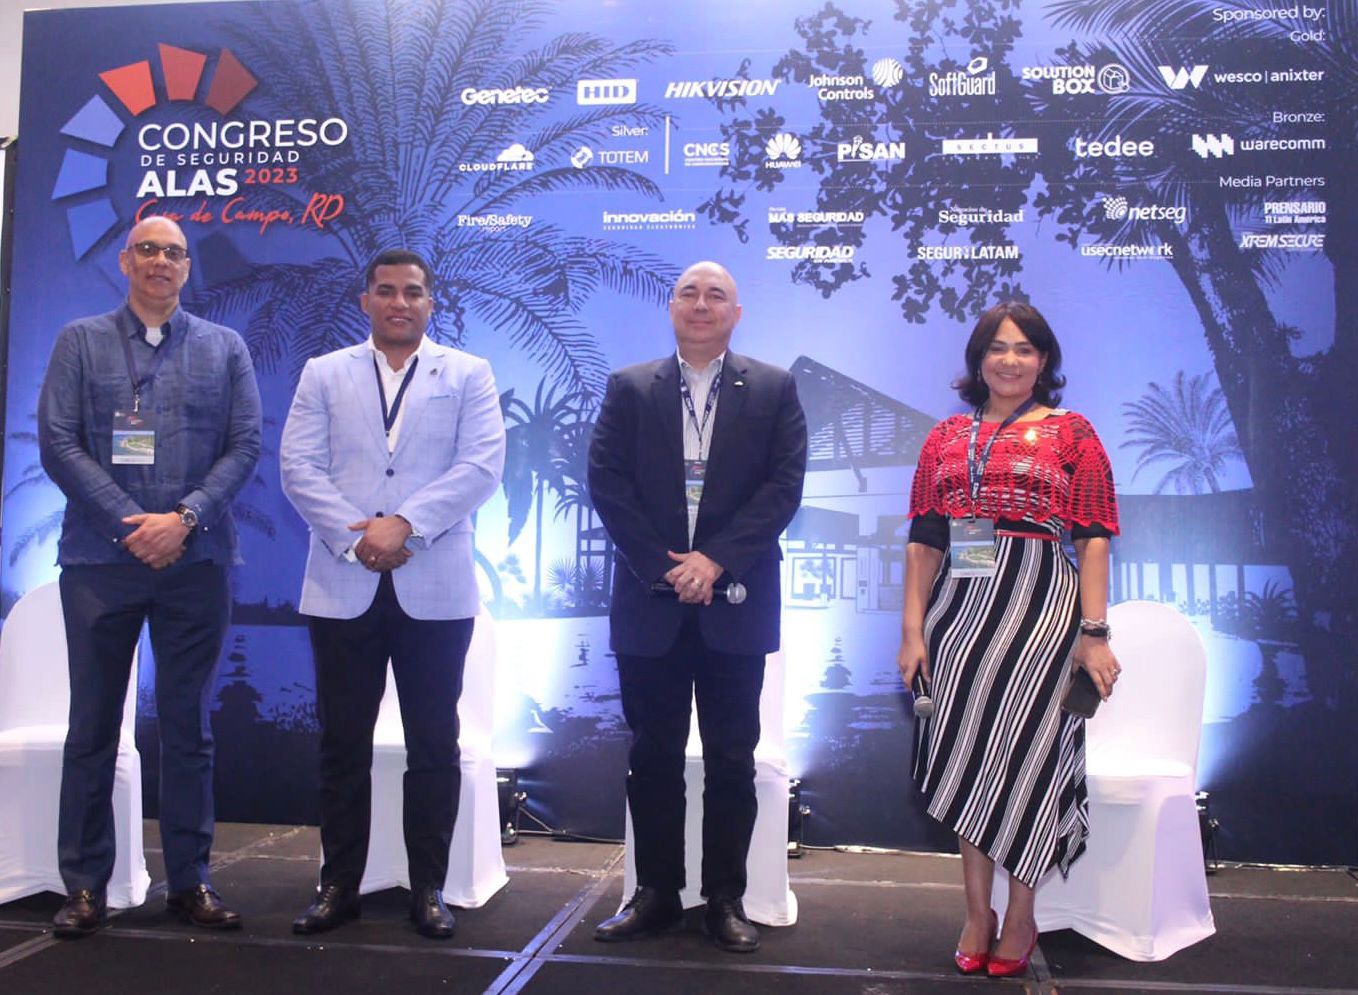 Director del CNCS Juan Gabriel Gautreaux participa en Panel Ciberseguridad en Congreso ALAS 2023